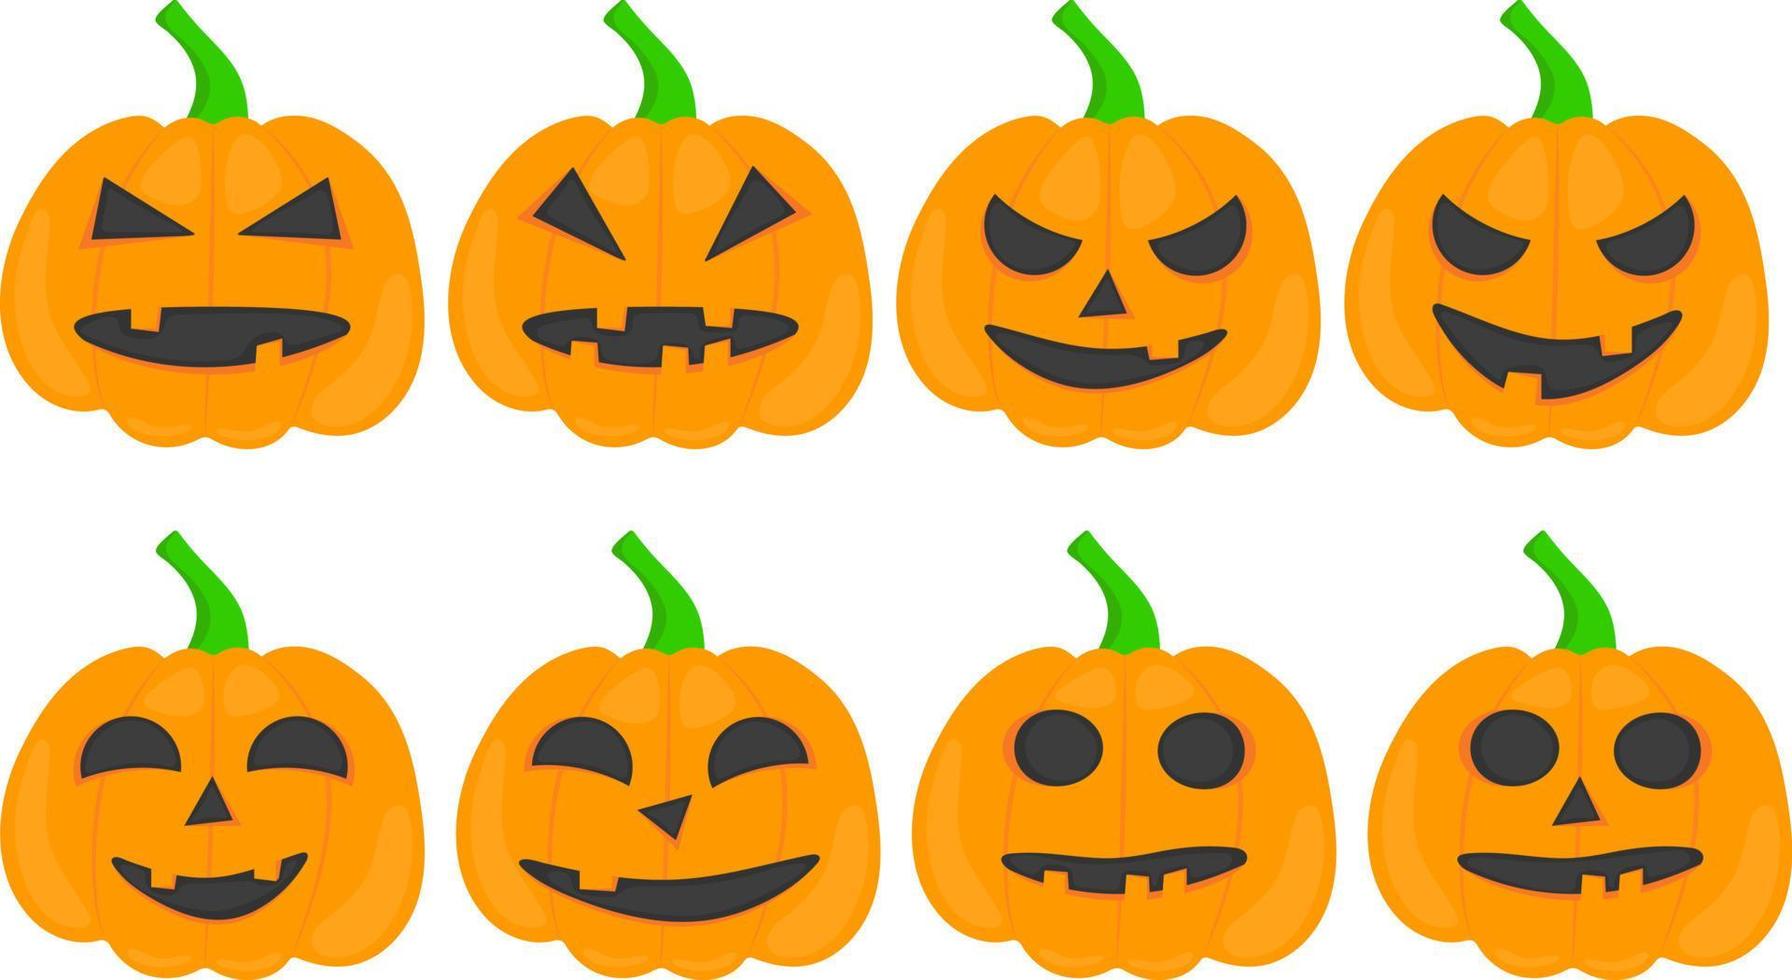 verschillend oranje halloween pompoenen met gezichten en emoties vector